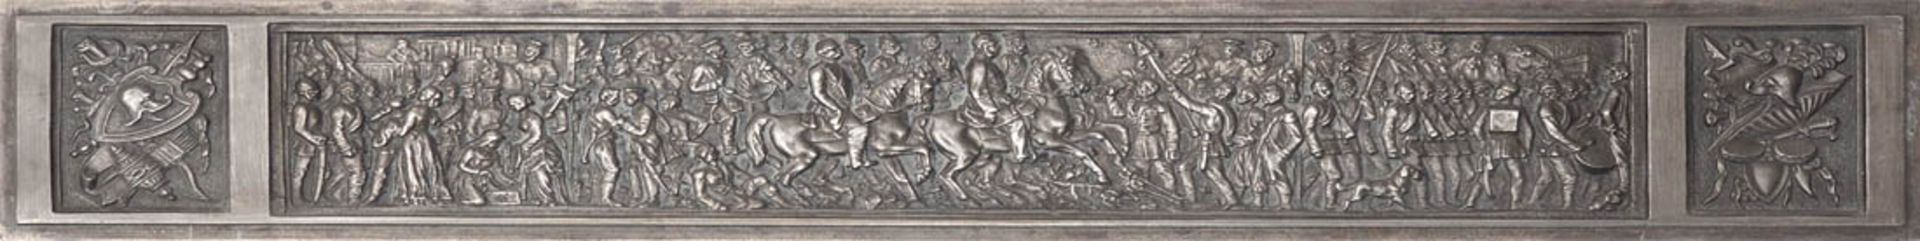 Bronzerelief Feine Darstellung eines Triumphzuges mit Kaiser Wilhelm II, Bismarck und